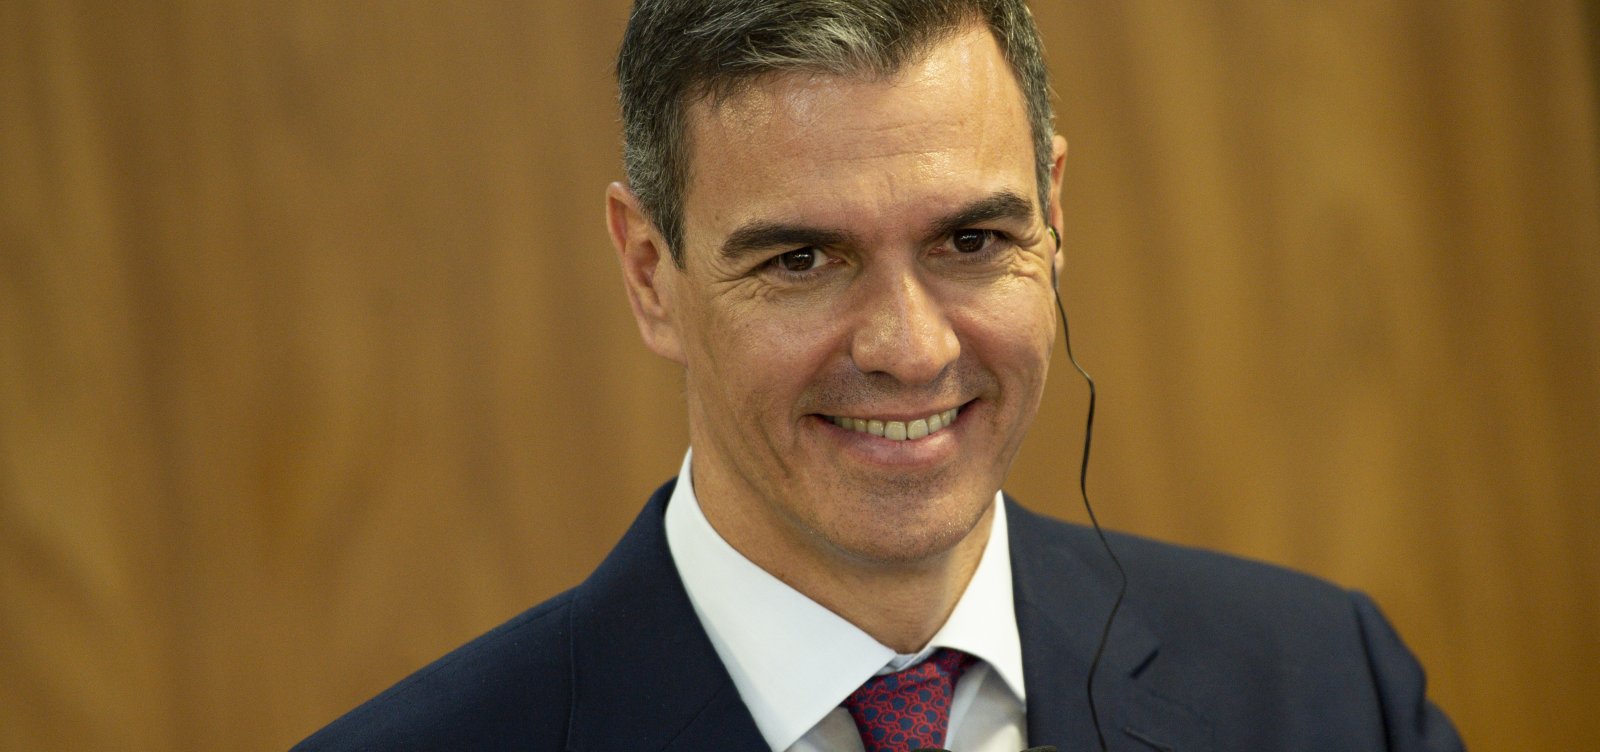 Primeiro-ministro da Espanha anuncia permanência no governo, após sugerir possibilidade de renúncia